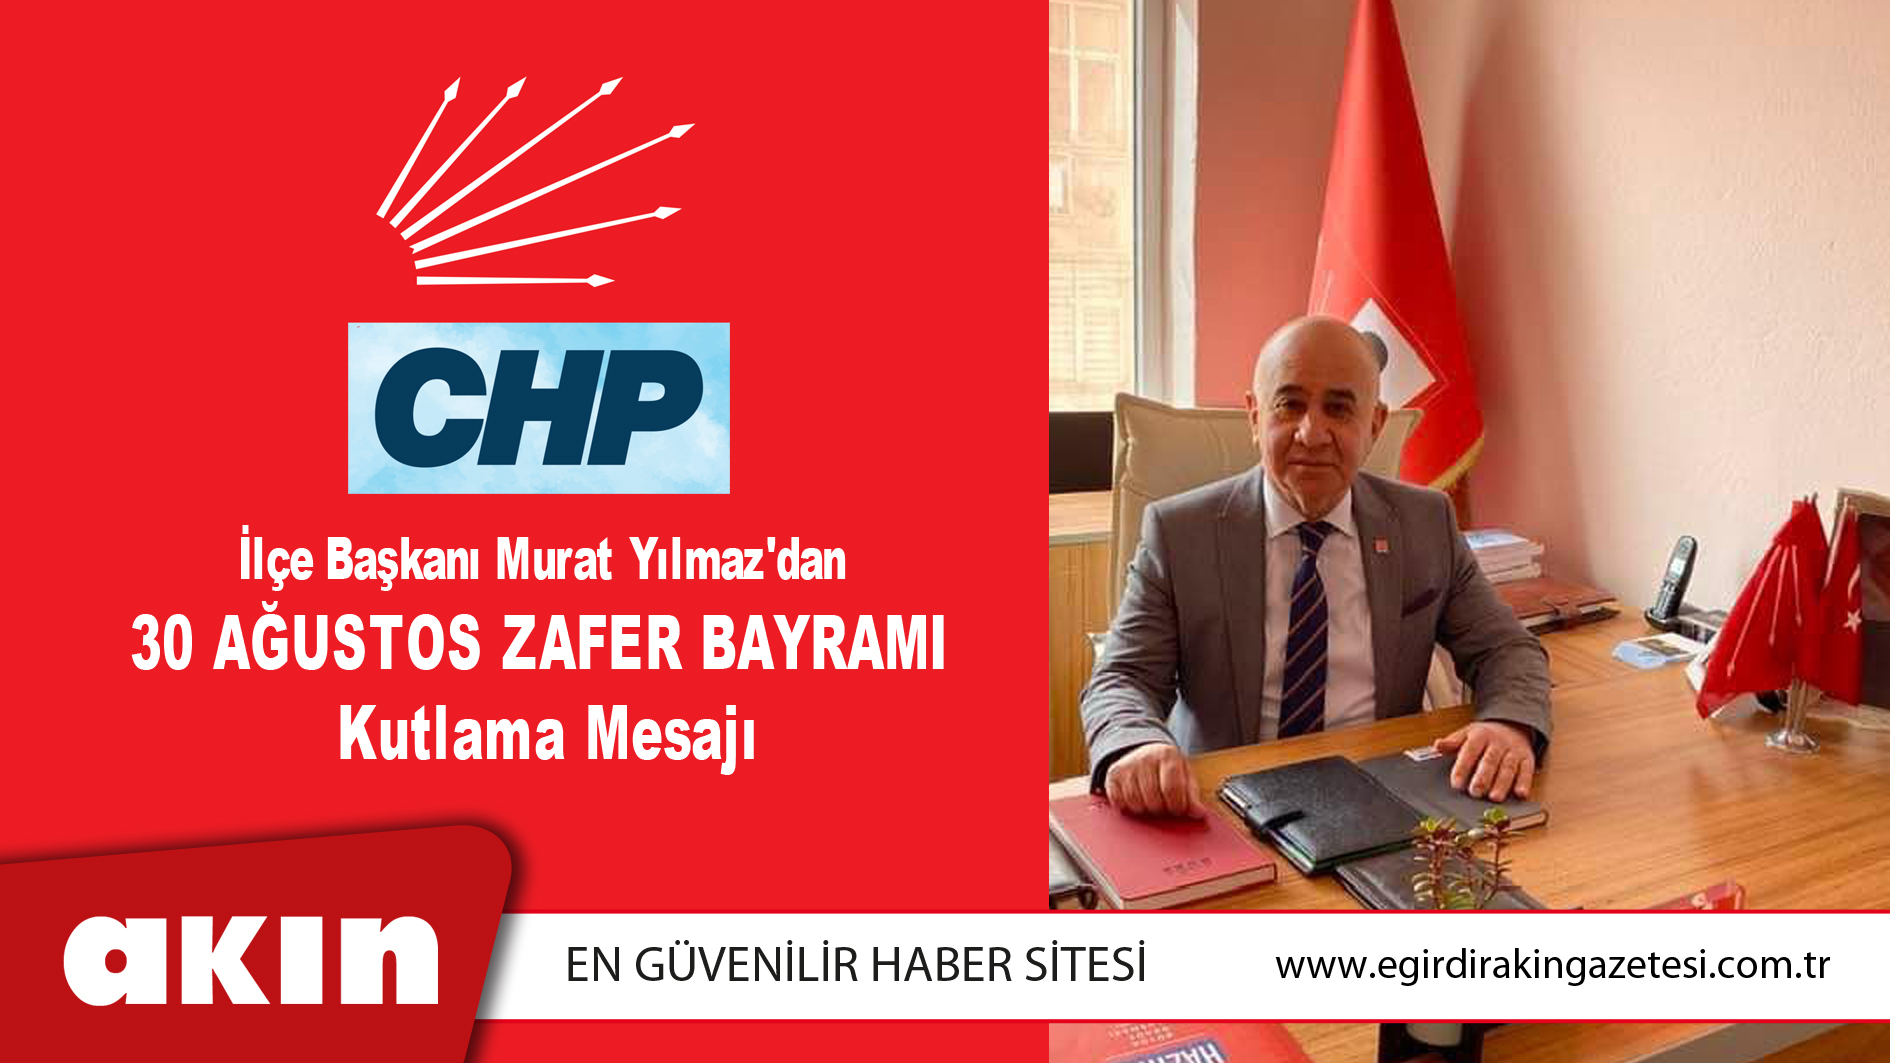 CHP İlçe Başkanı Murat Yılmaz'dan Kutlama Mesajı